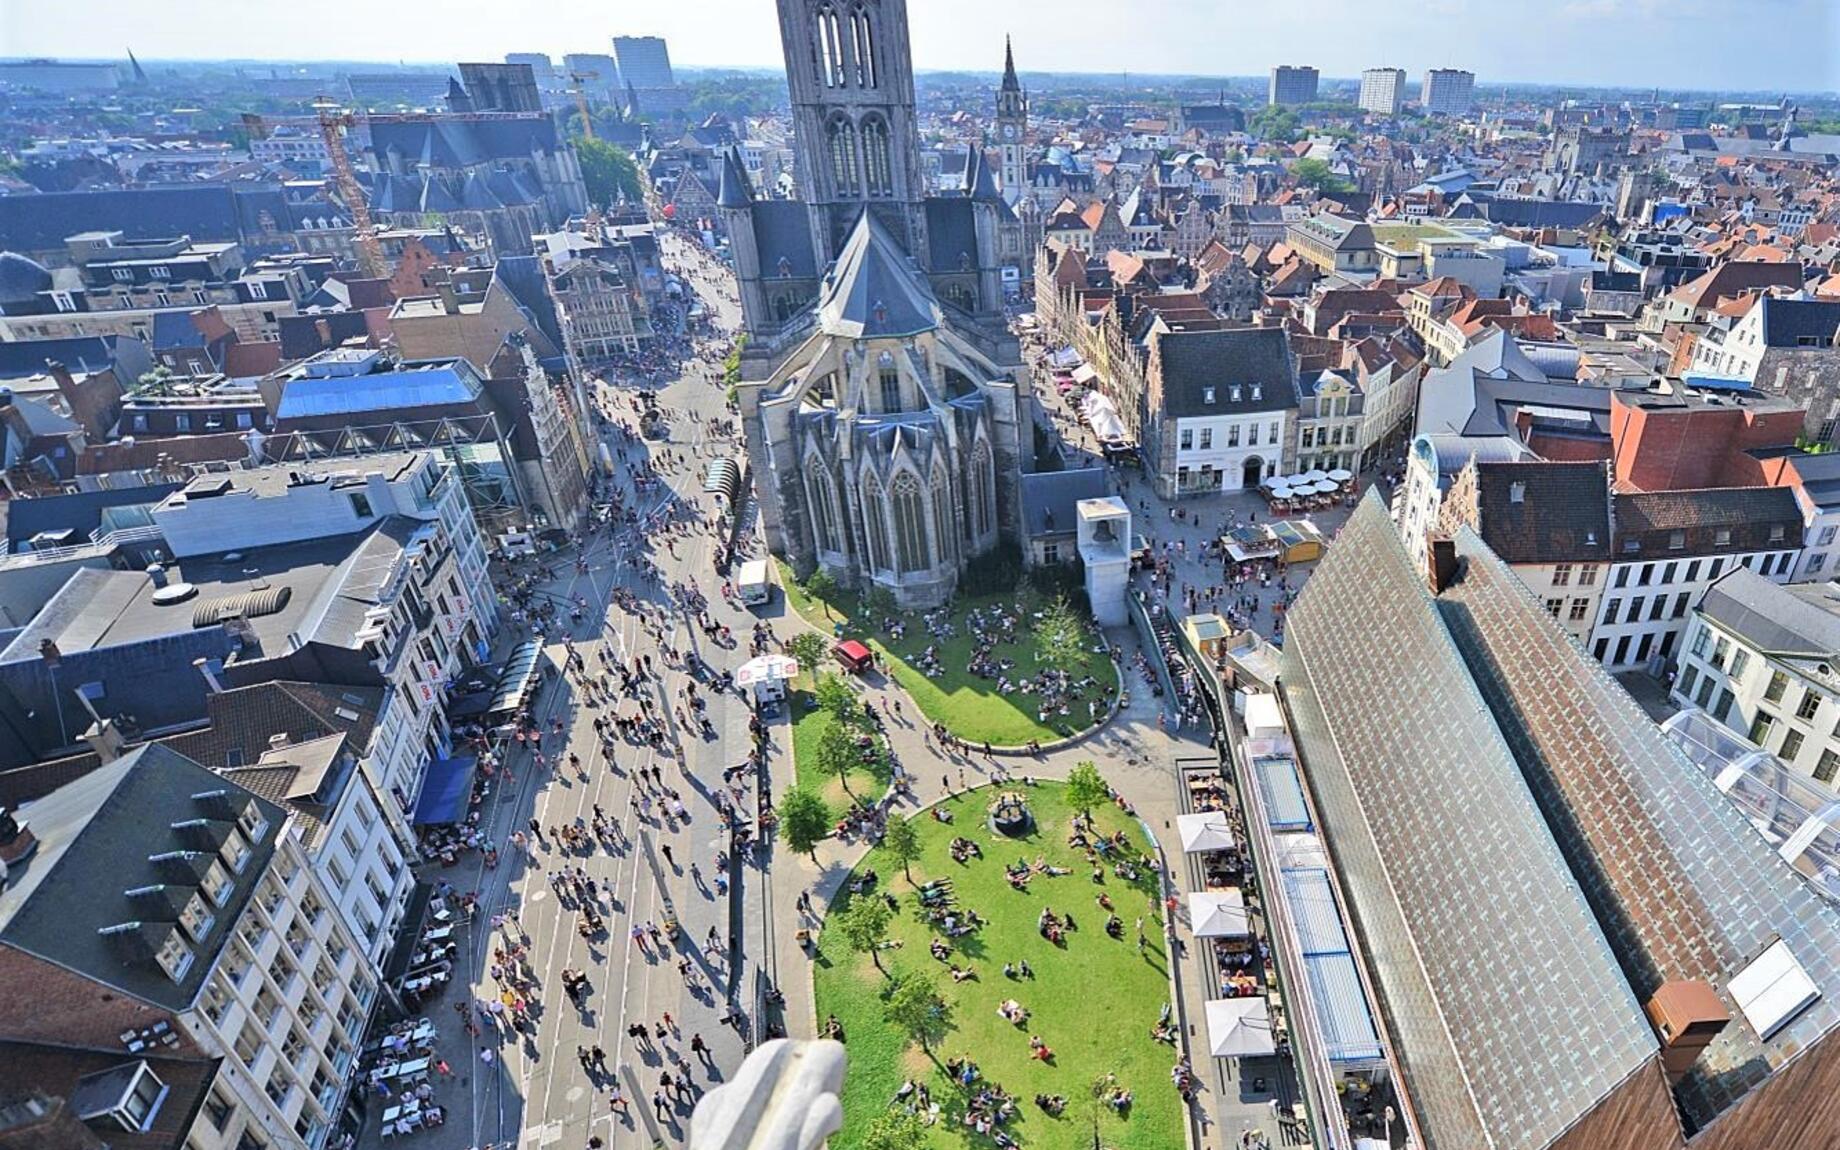 Luchtfoto Gent centrum